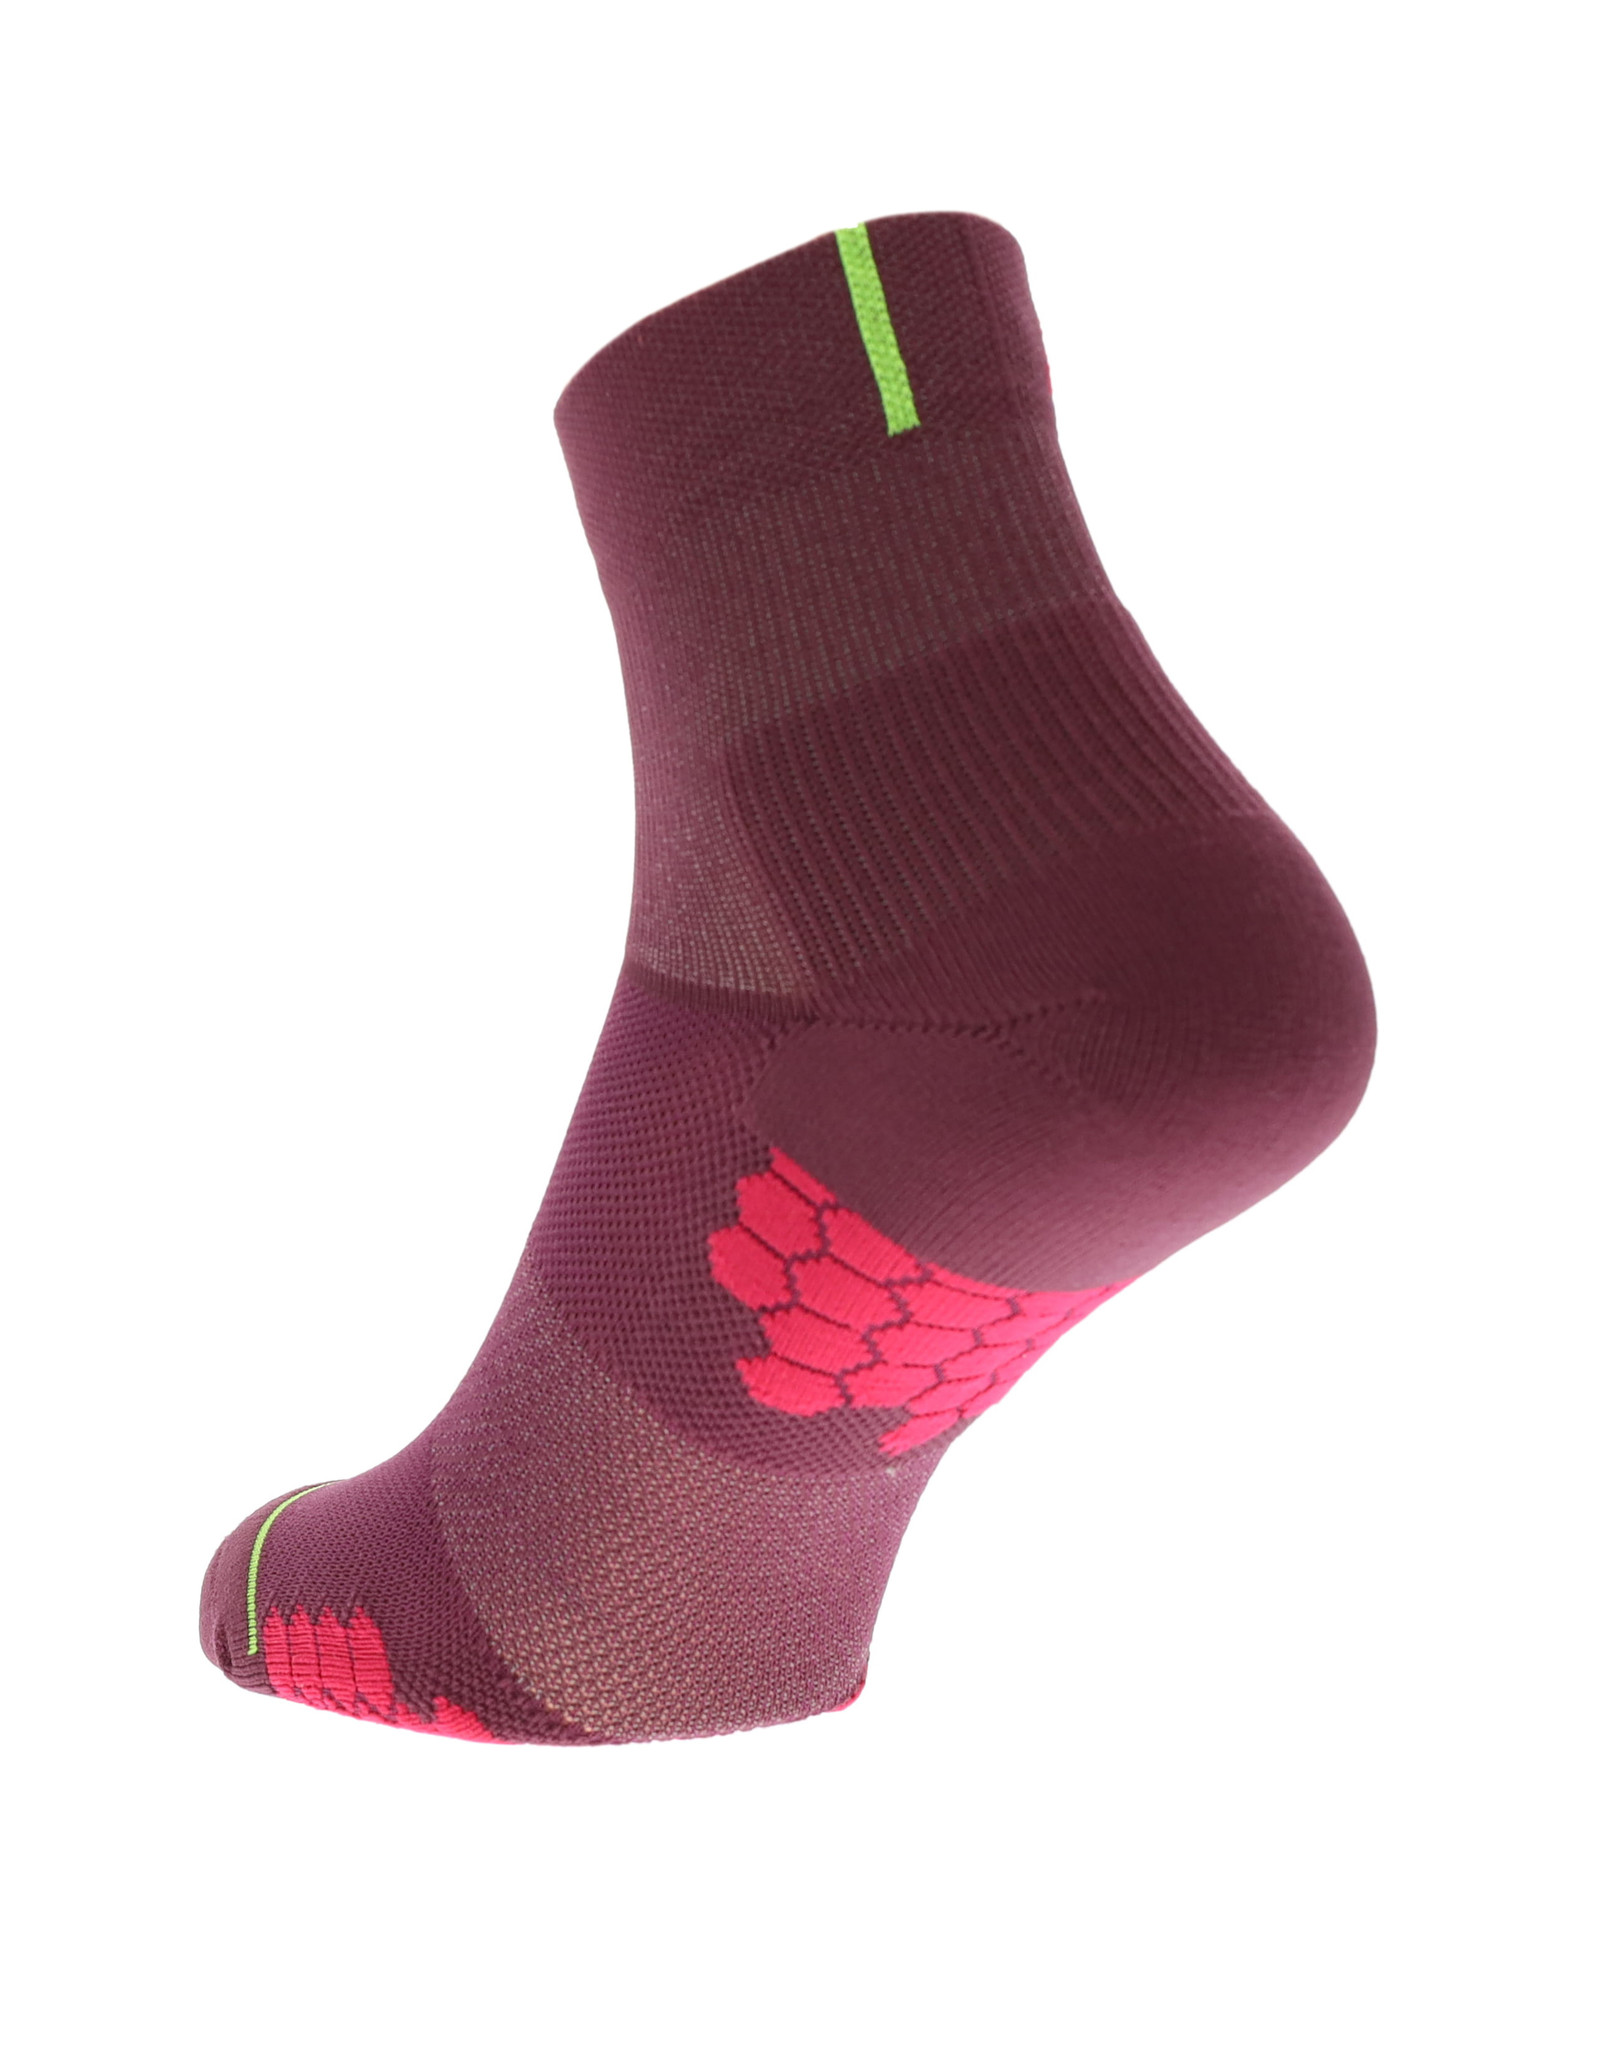 Inov-8 Trailfly Sock Mid - Teal / Purple